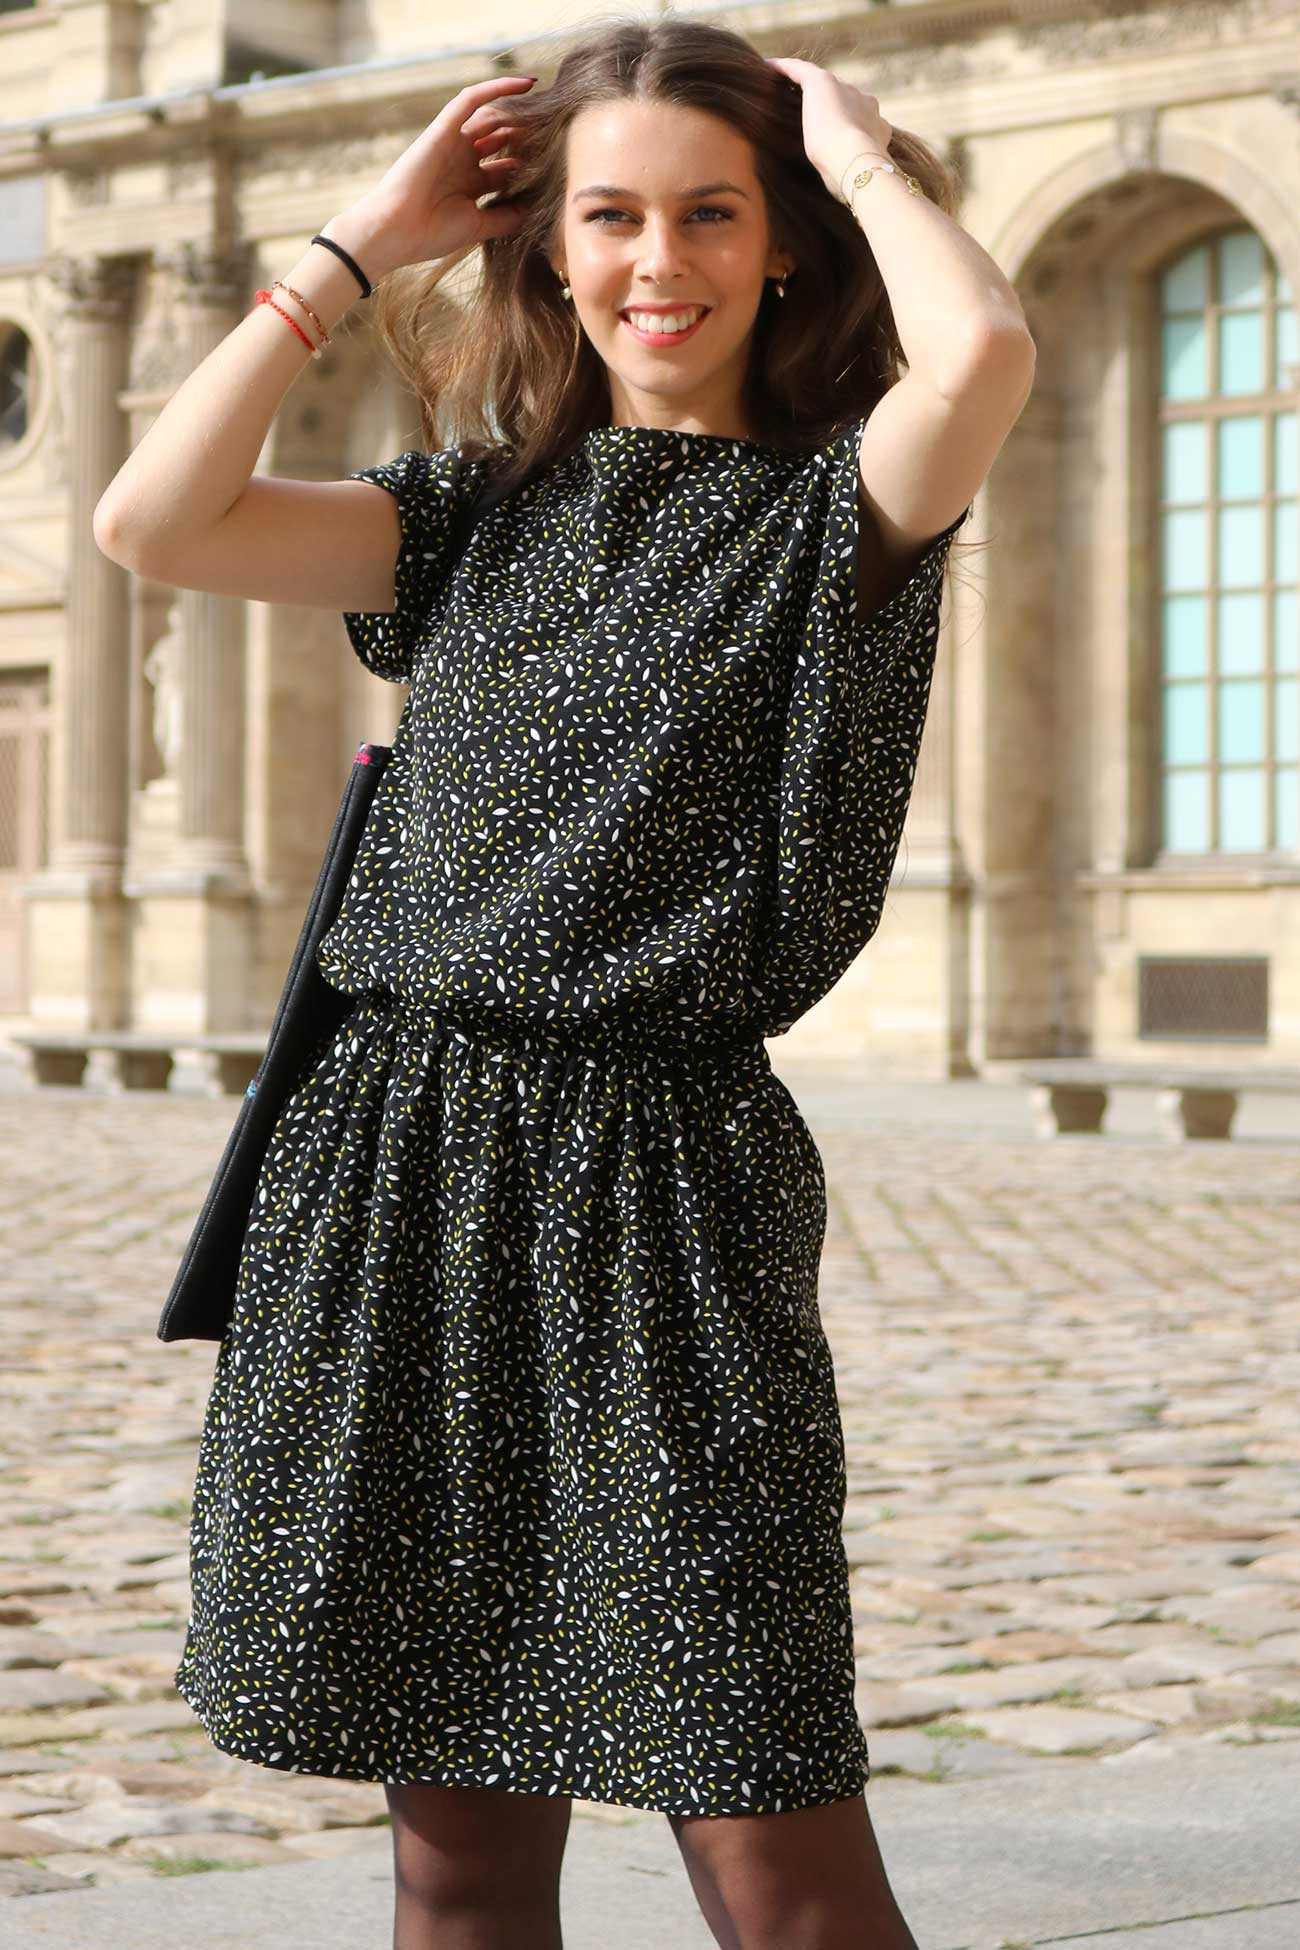 Cours de couture niveau débutant pour apprendre à coudre une robe À Lyon  Rhône 69 - Brin d'idée